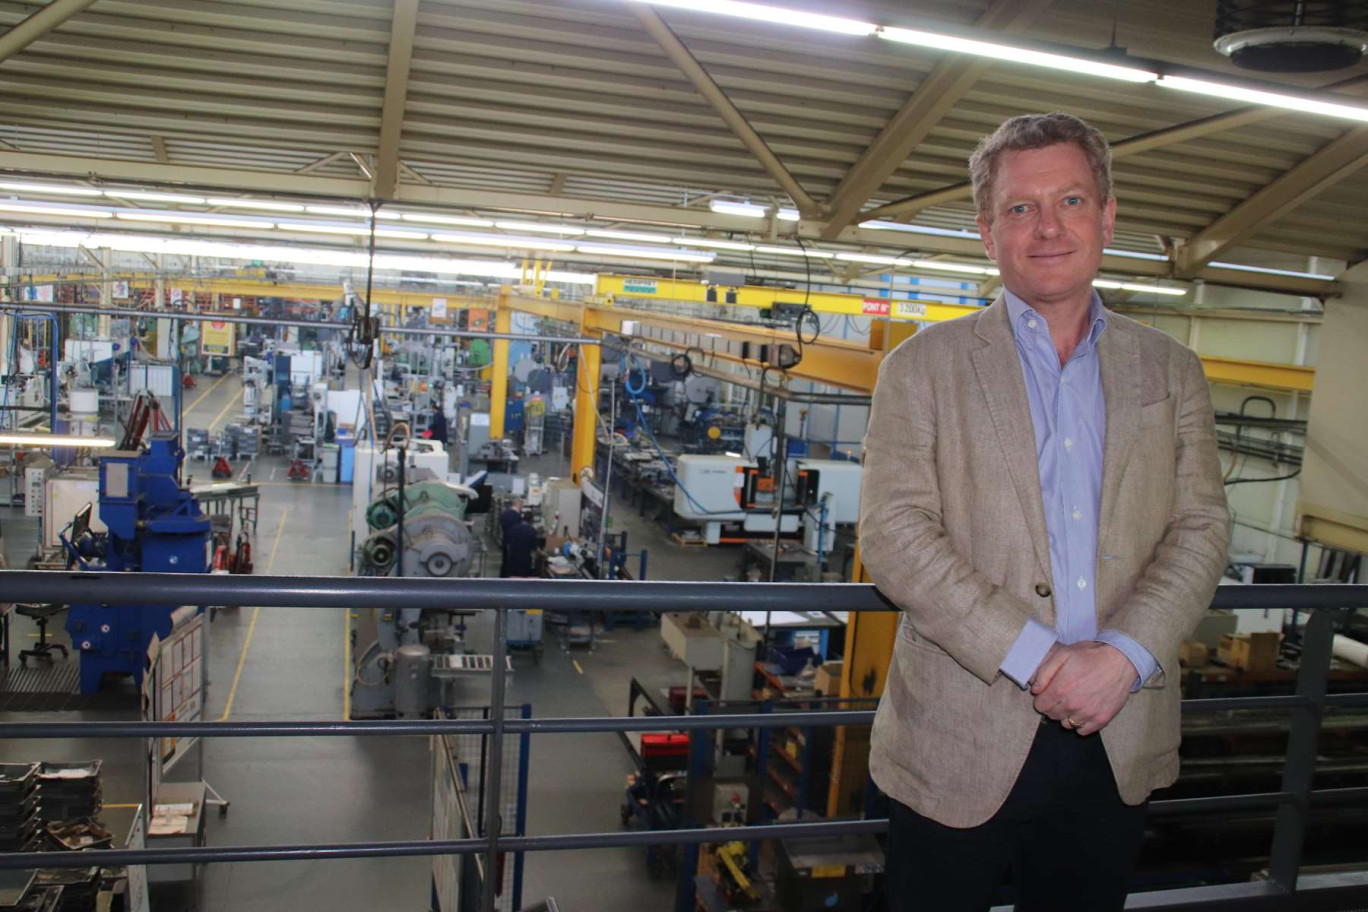 Le Directeur général de Pinet Industrie Gonzague Villeday surplombant l’atelier de fabrication d’une superficie de 10 000 m².